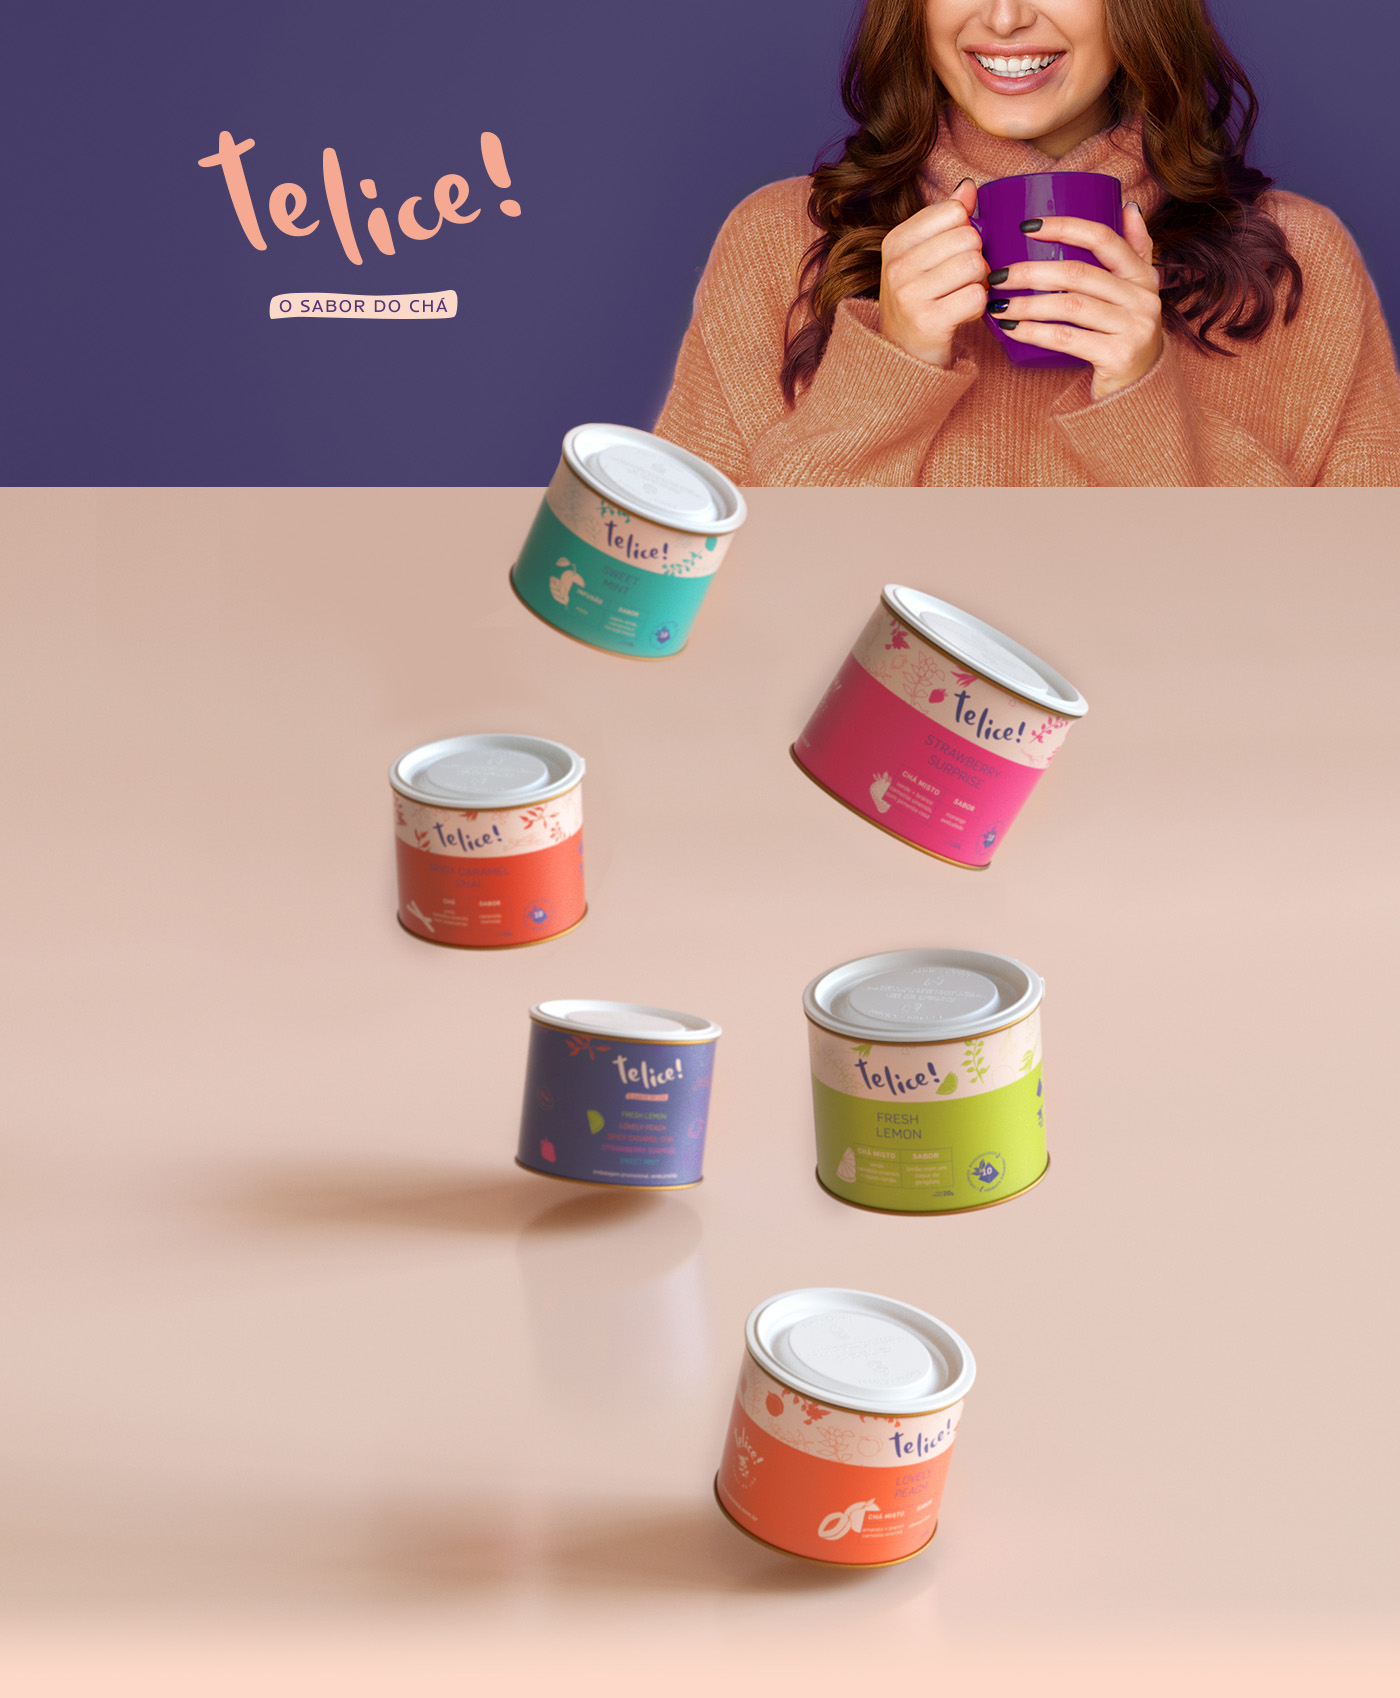 Telice茶品牌包装设计